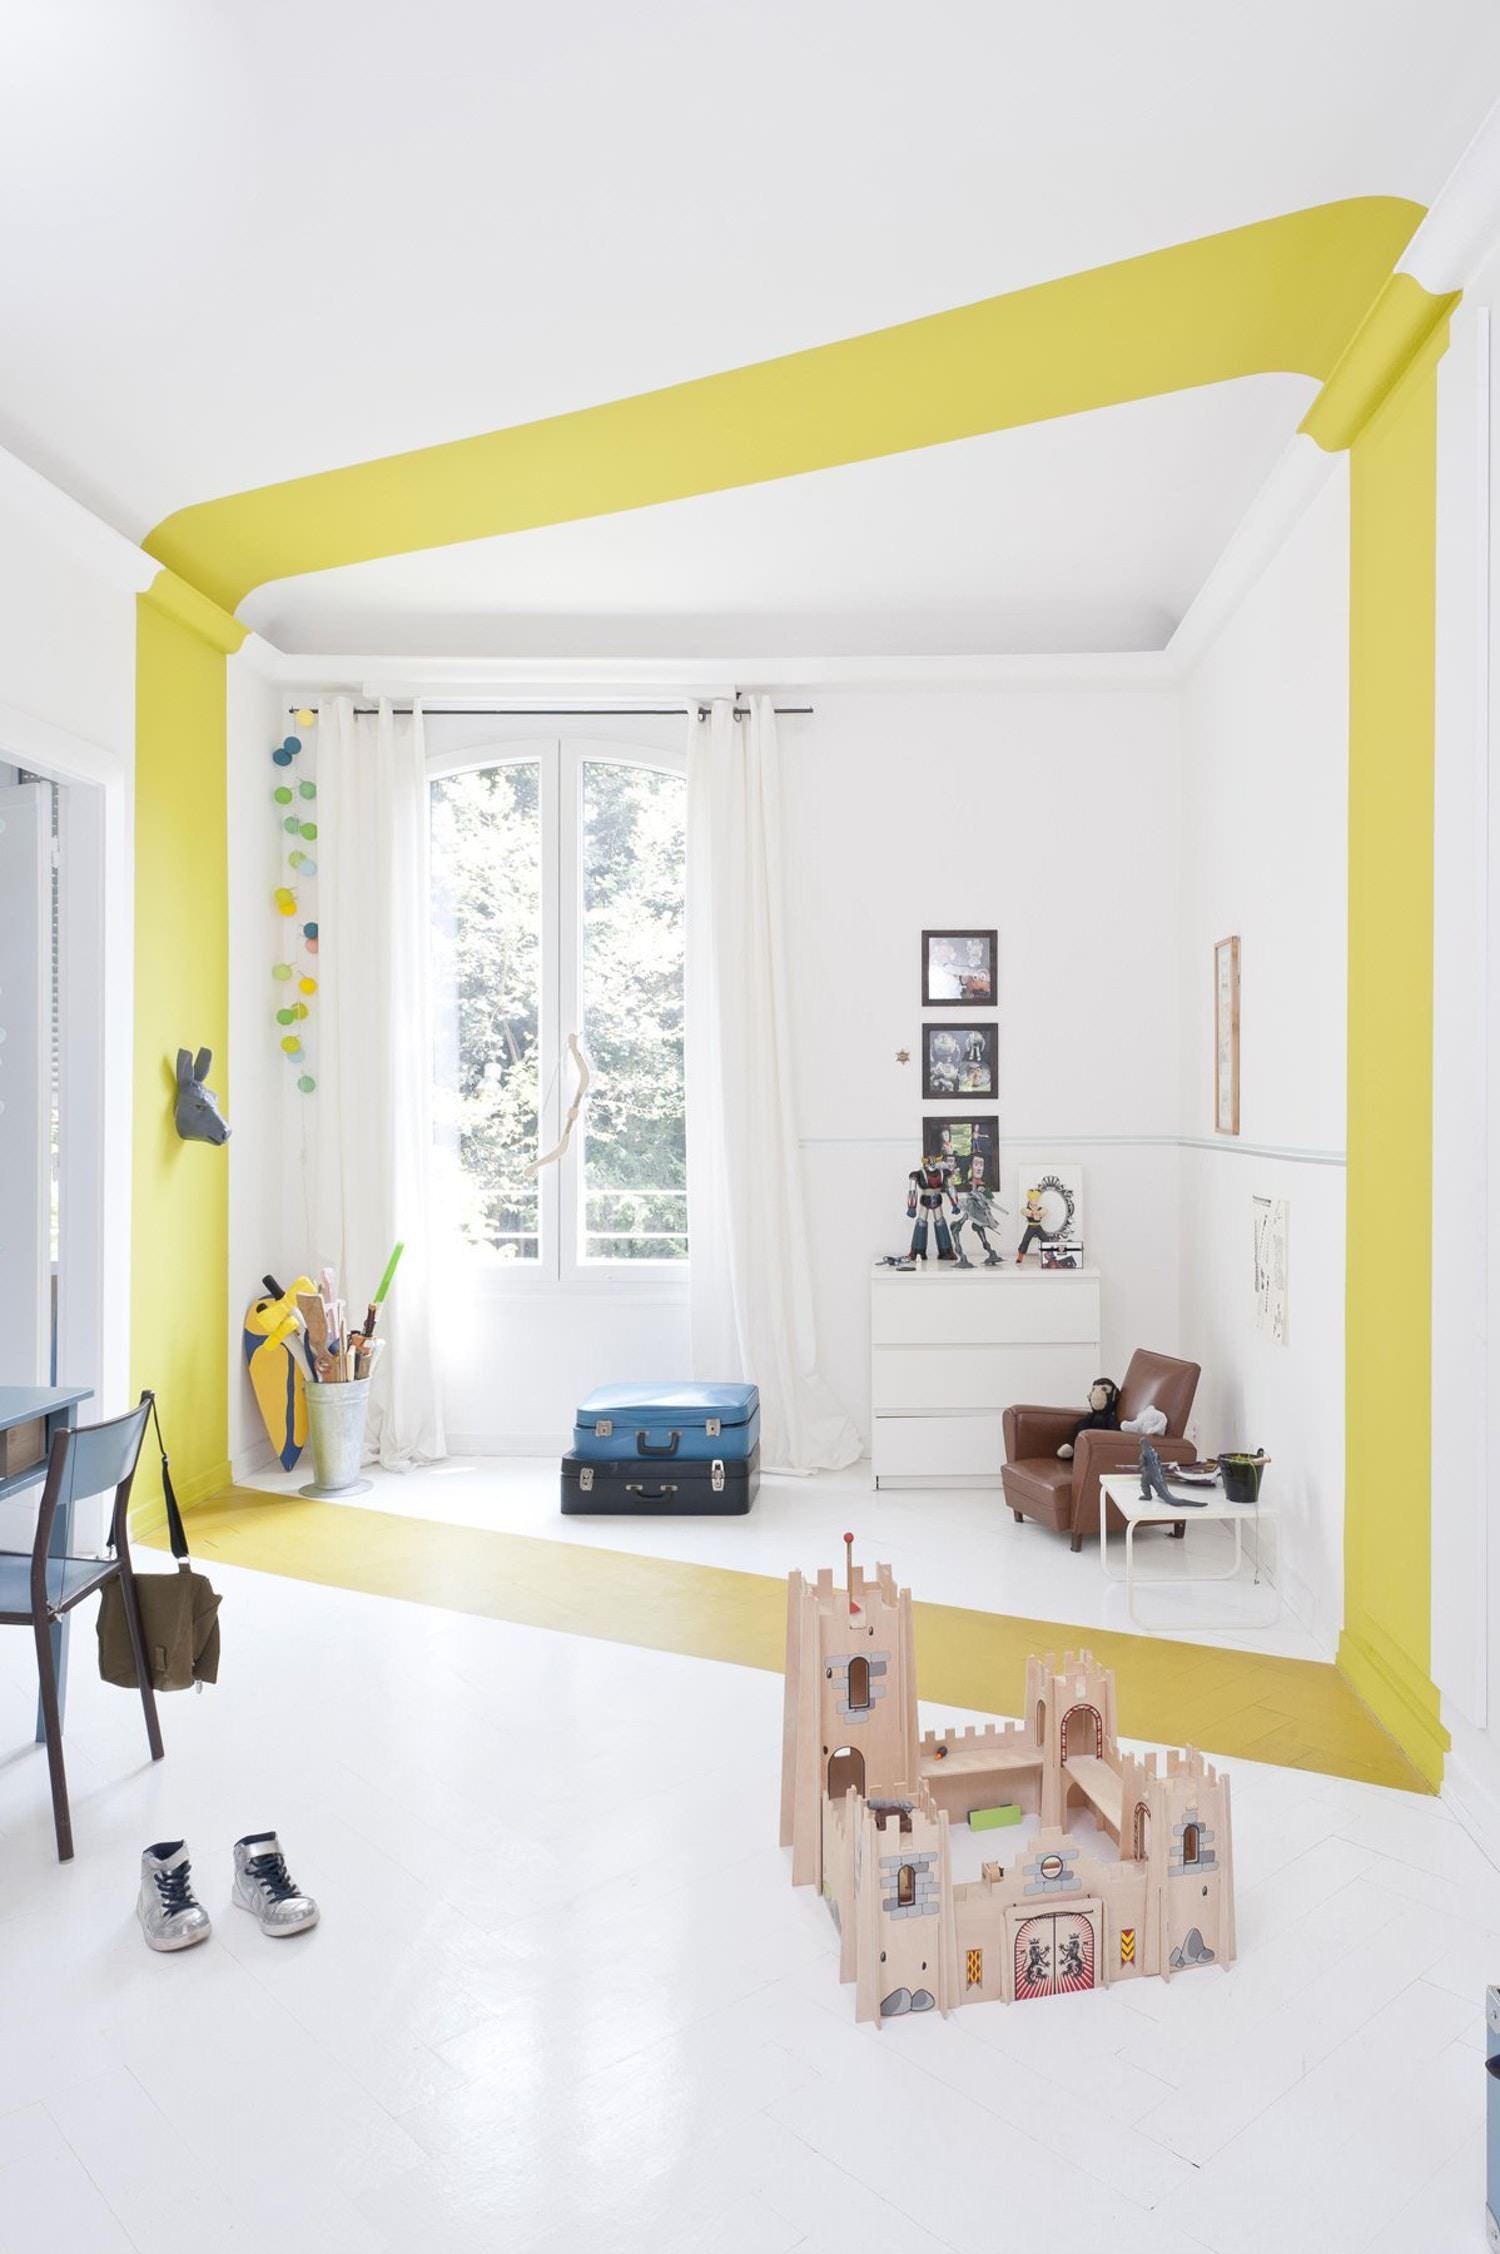 Design stanza ragazzo allegra e luminosa con una particolare striscia gialla che percorre in verticale tutta la stanza - idee cameretta bambini moderna e originale